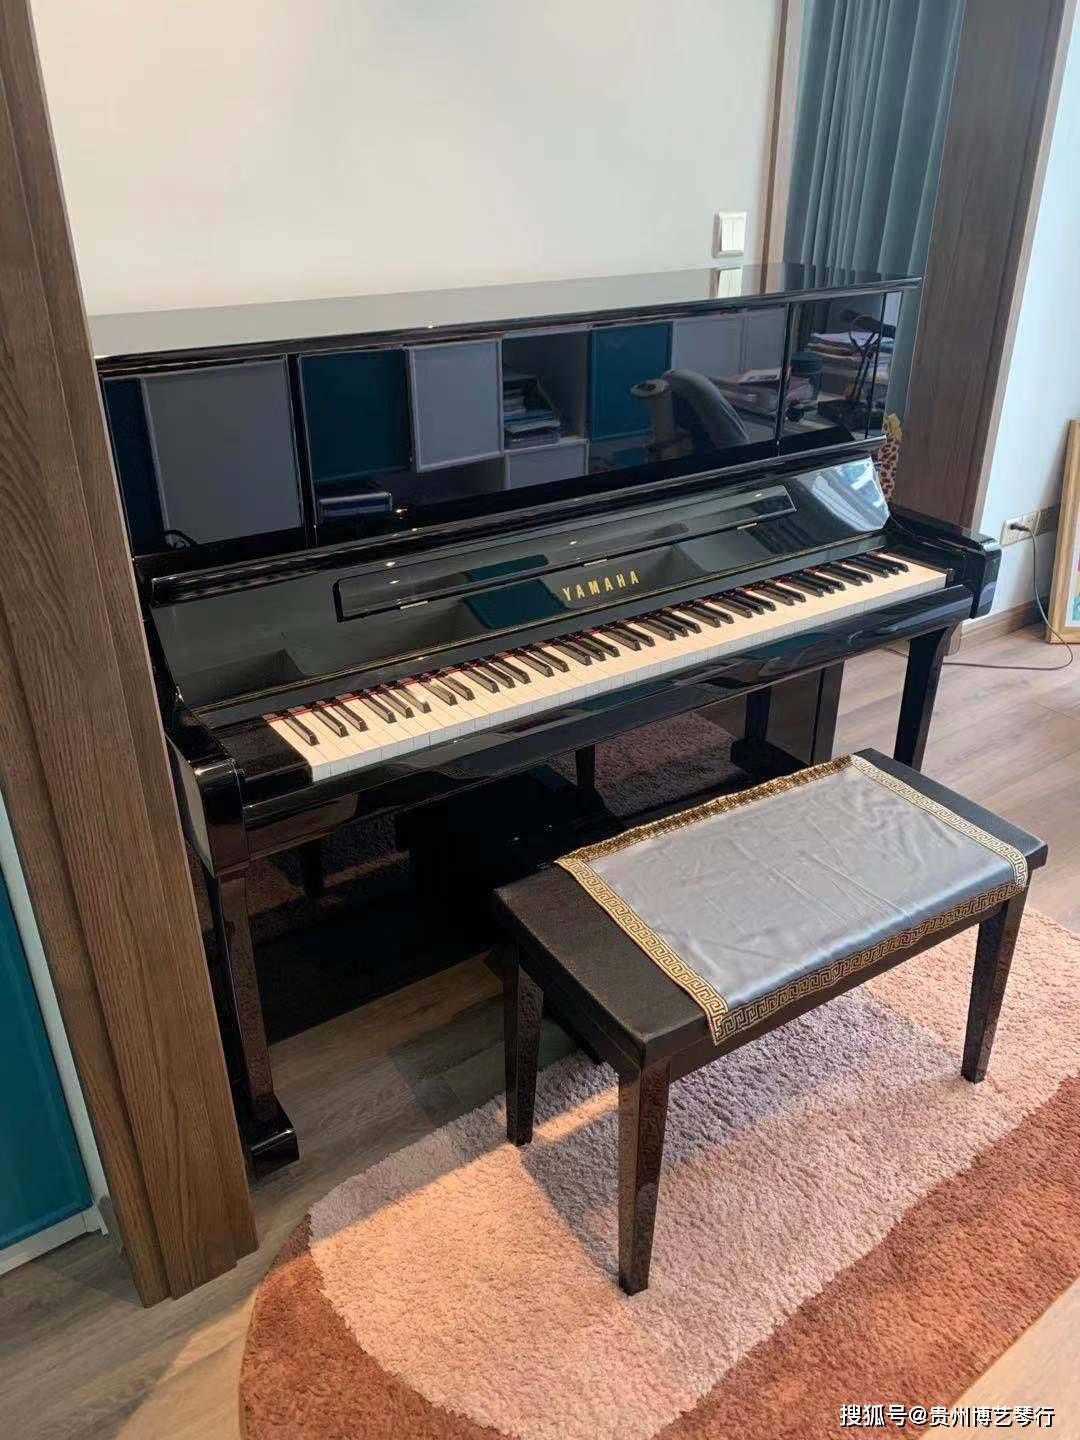 雅马哈钢琴yu1x 仅售30499元